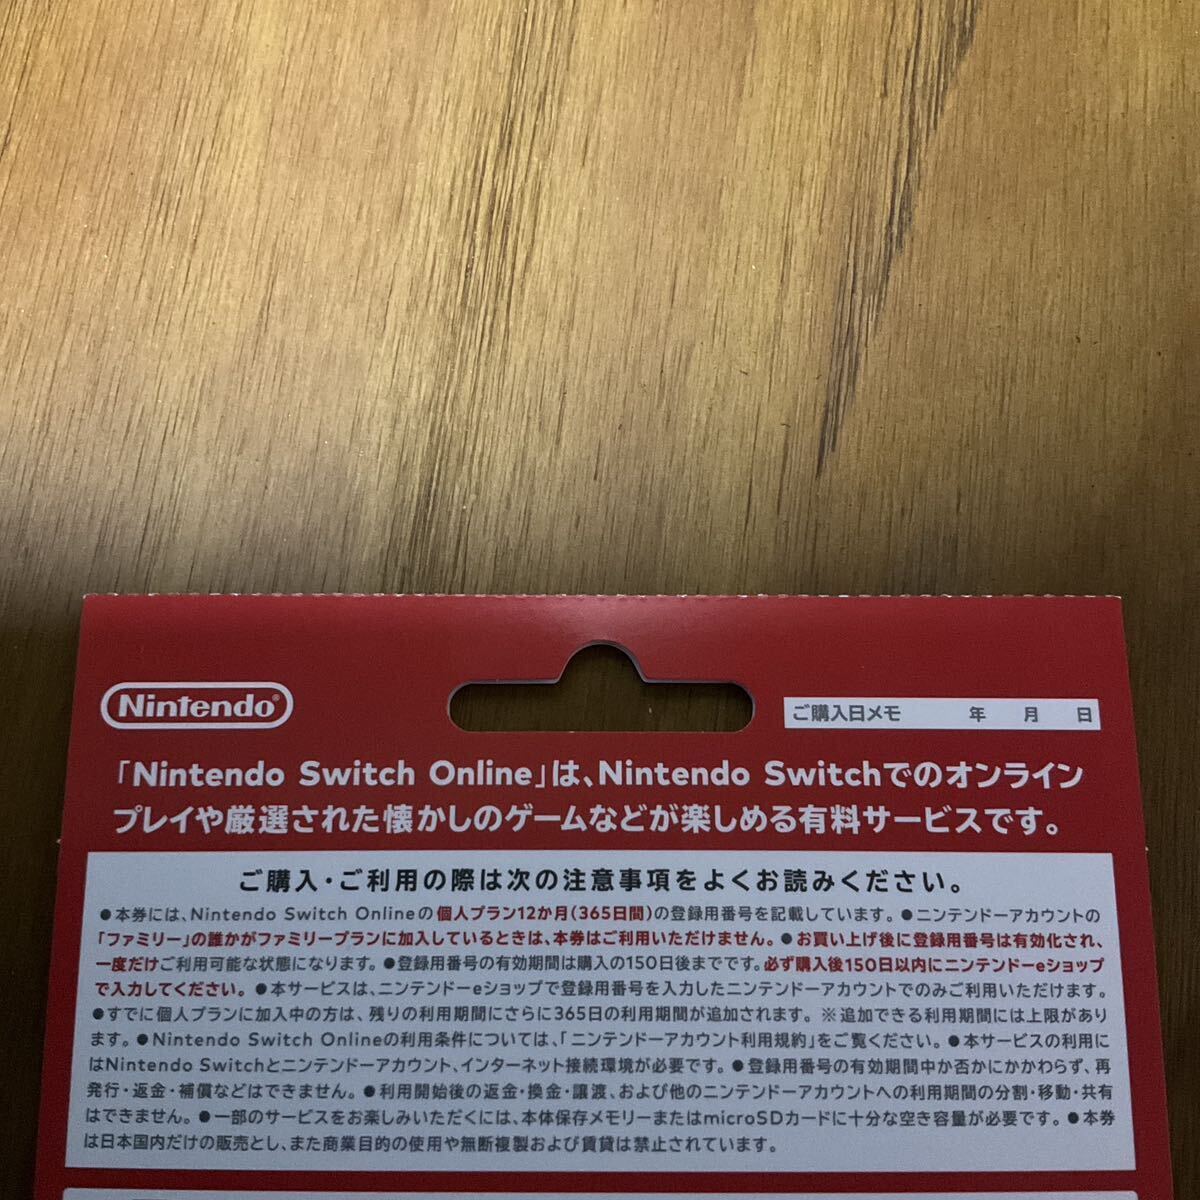 Switch Nintendo Online利用券 個人プラン 12ヶ月 郵送